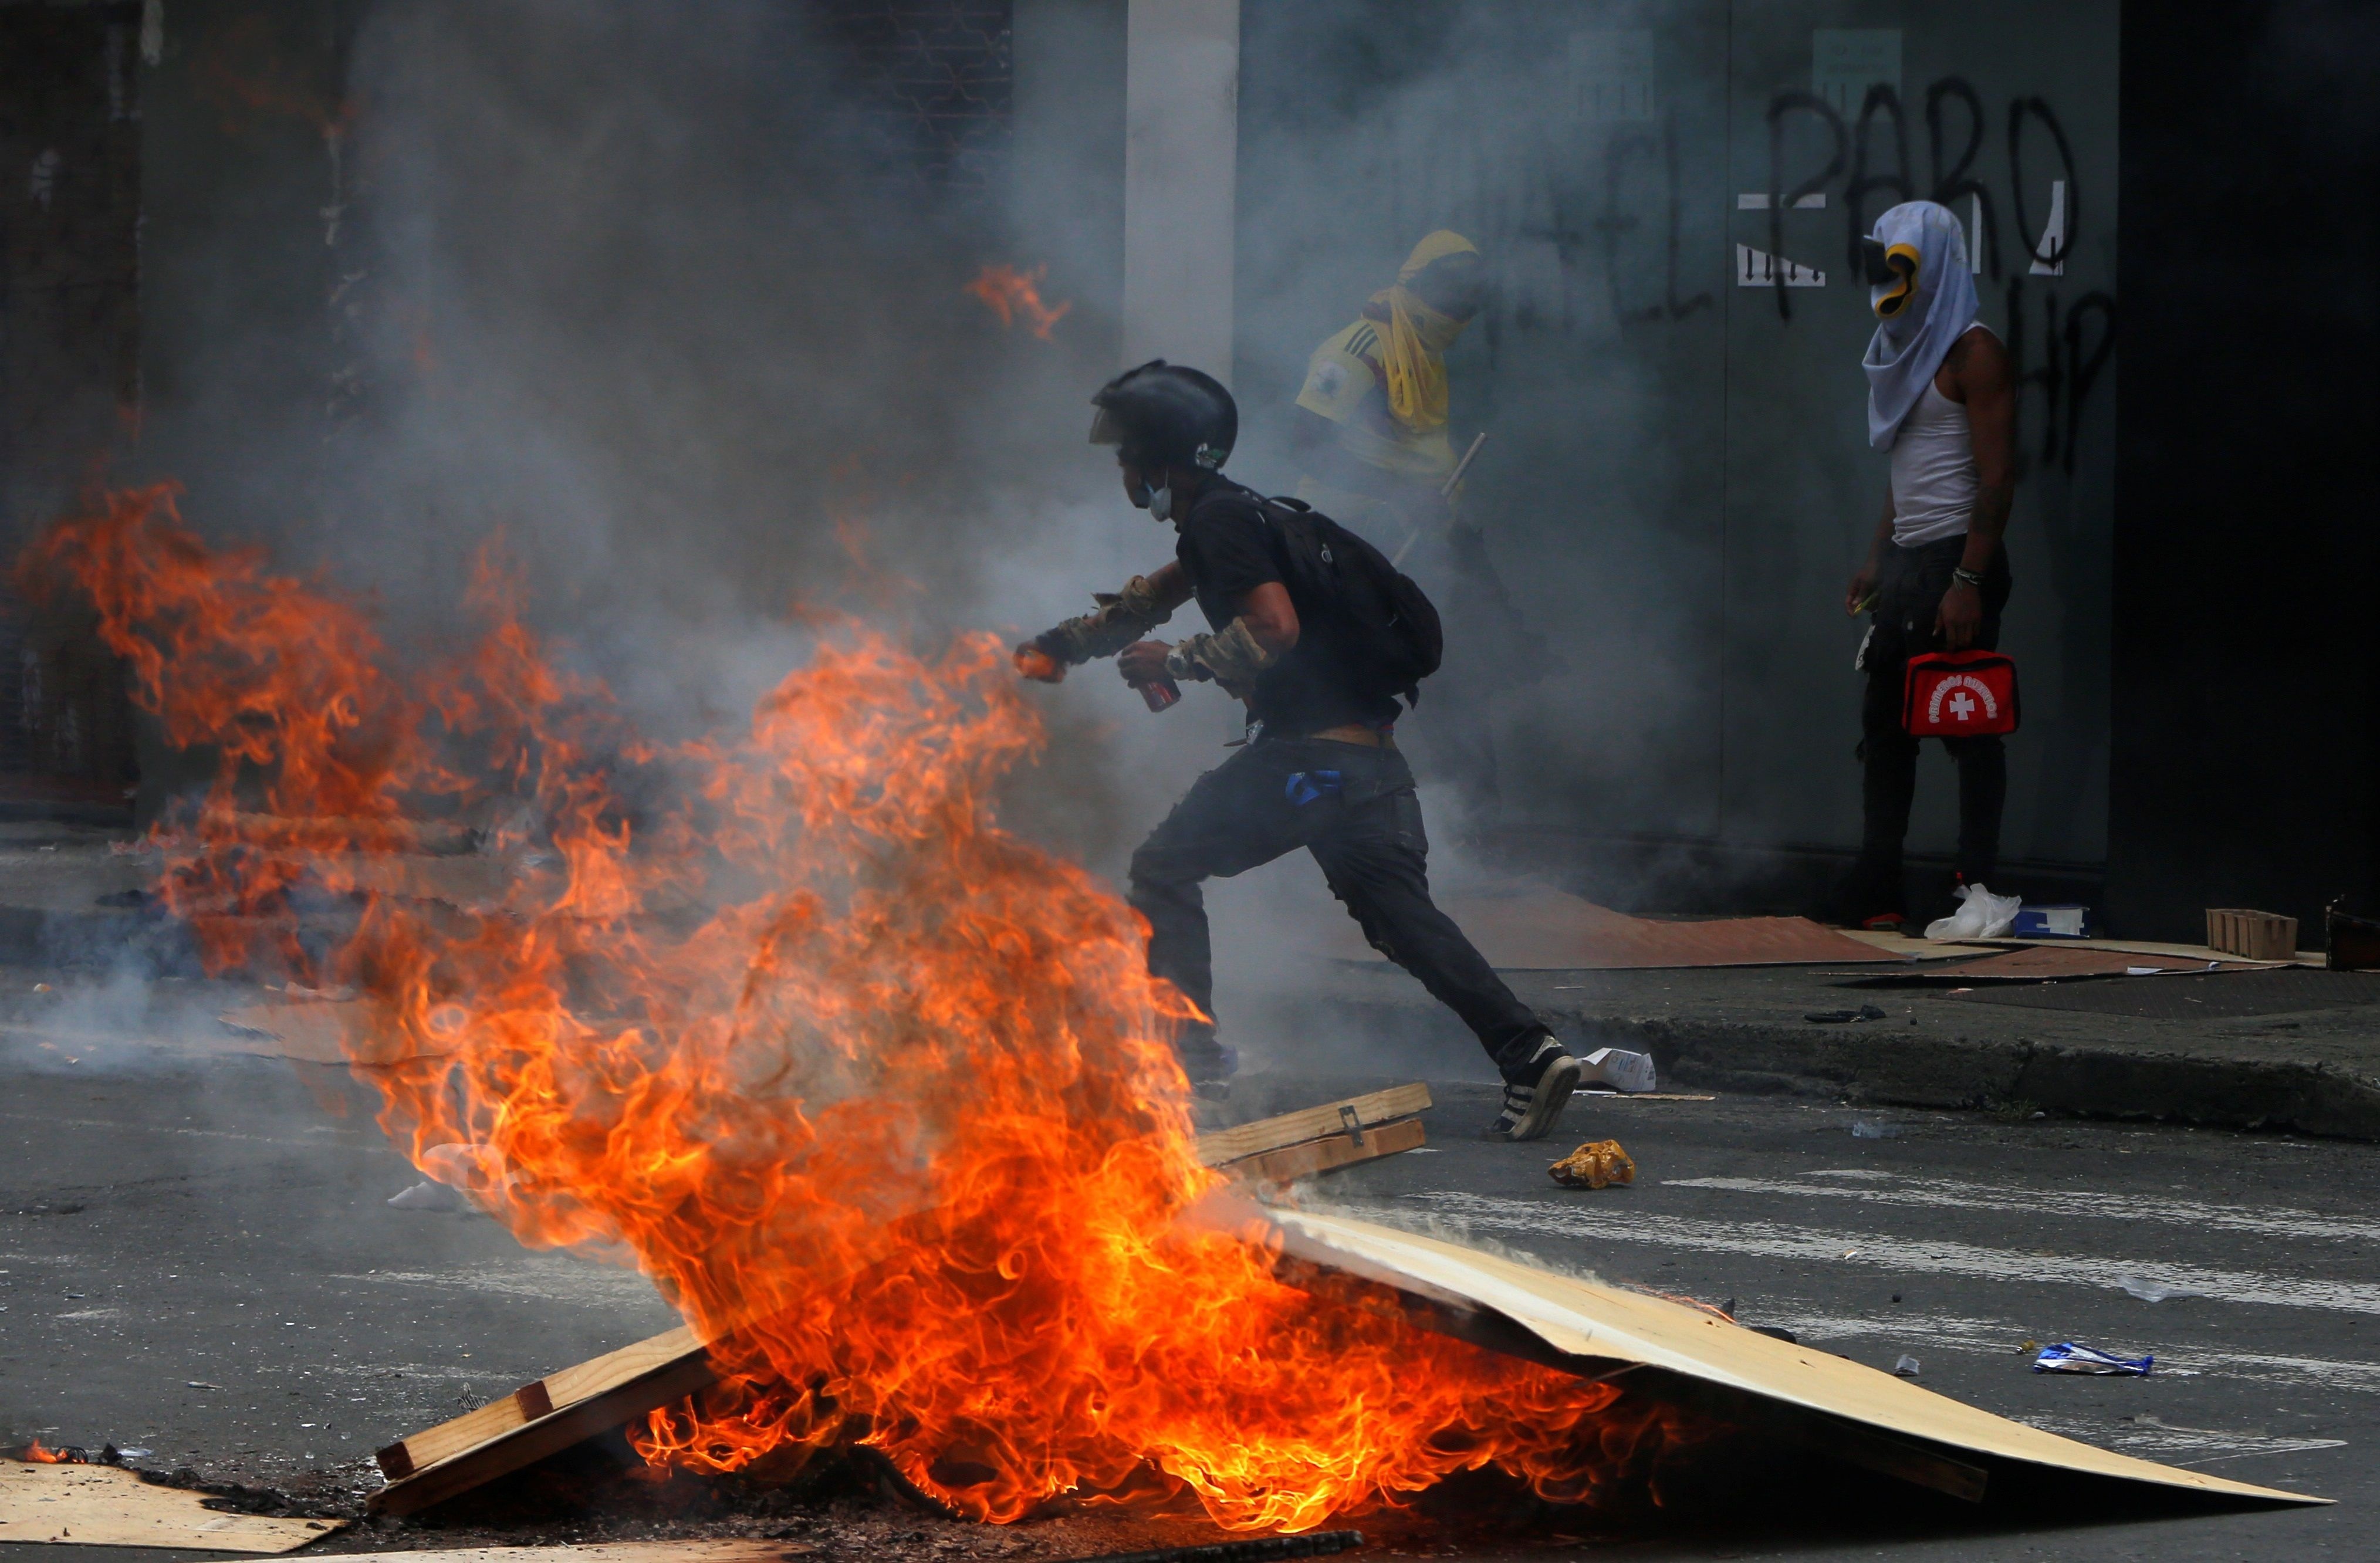 Capturaron en Cali a alias “Lerma”, cabecilla del ELN vinculado a acciones vandálicas en las protestas colombianas